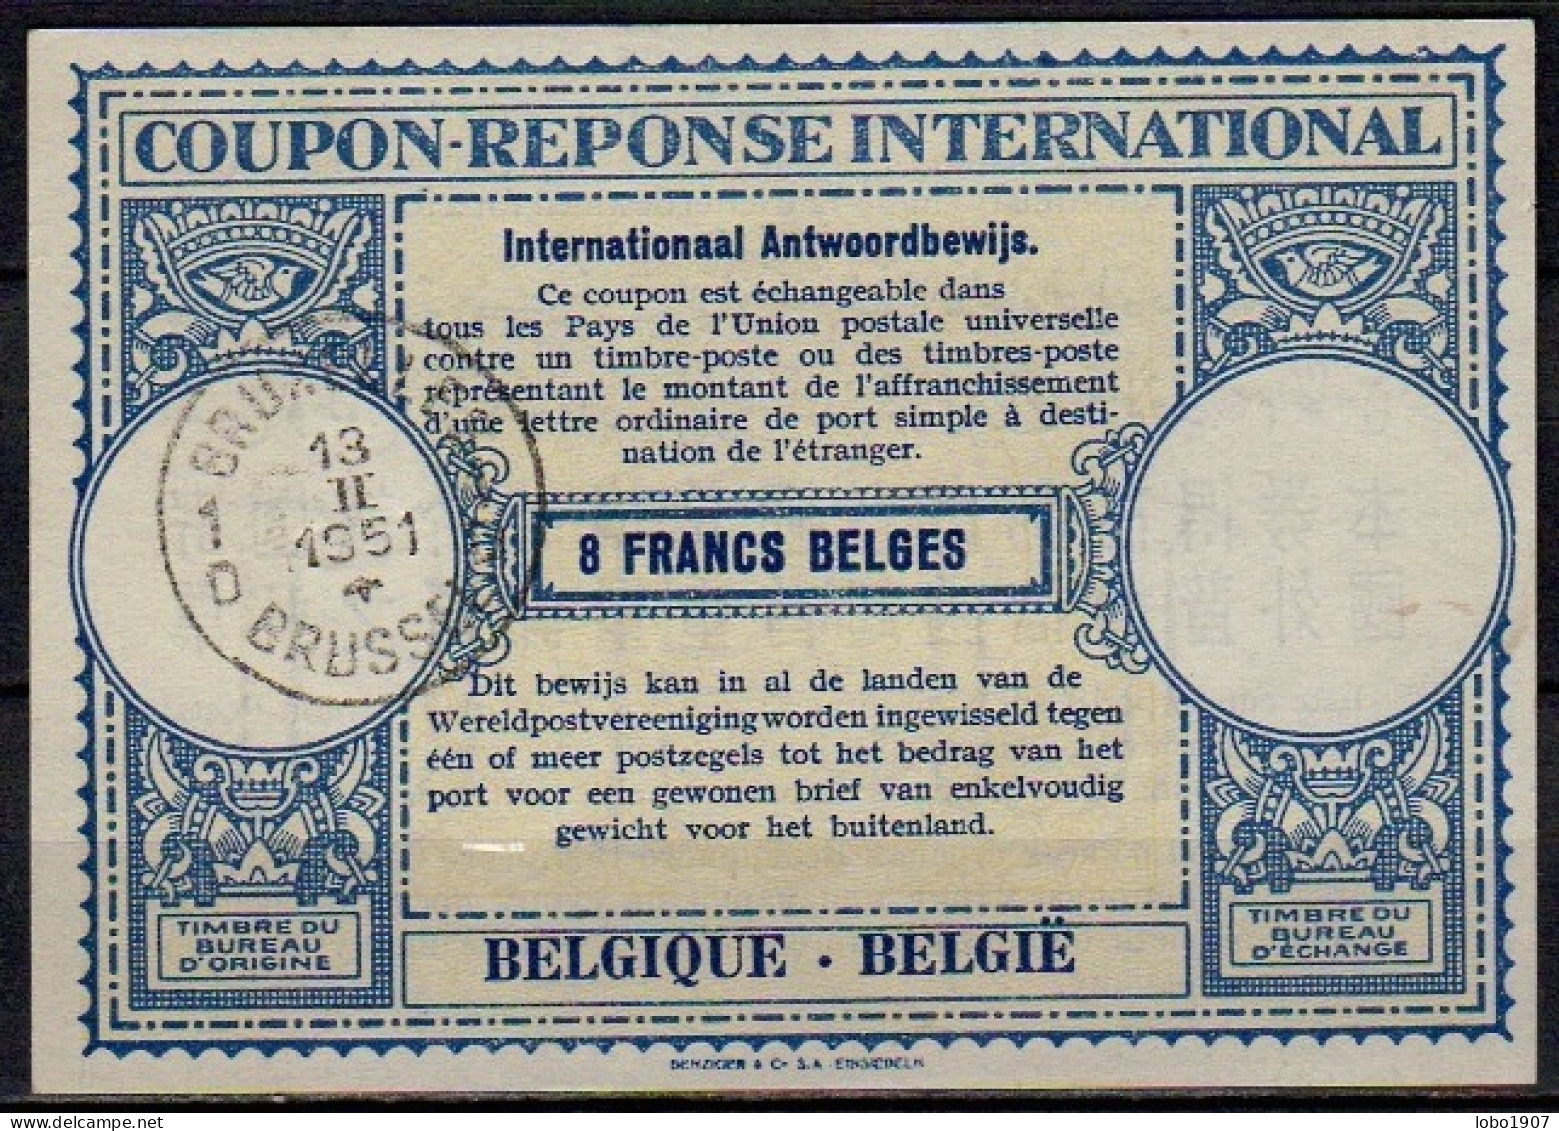 BELGIQUE BELGIE BELGIUM 1951, Lo15  8 FRANCS BELGES International Reply Coupon Reponse Antwortschein IAS IRC  O BRUXELLE - International Reply Coupons